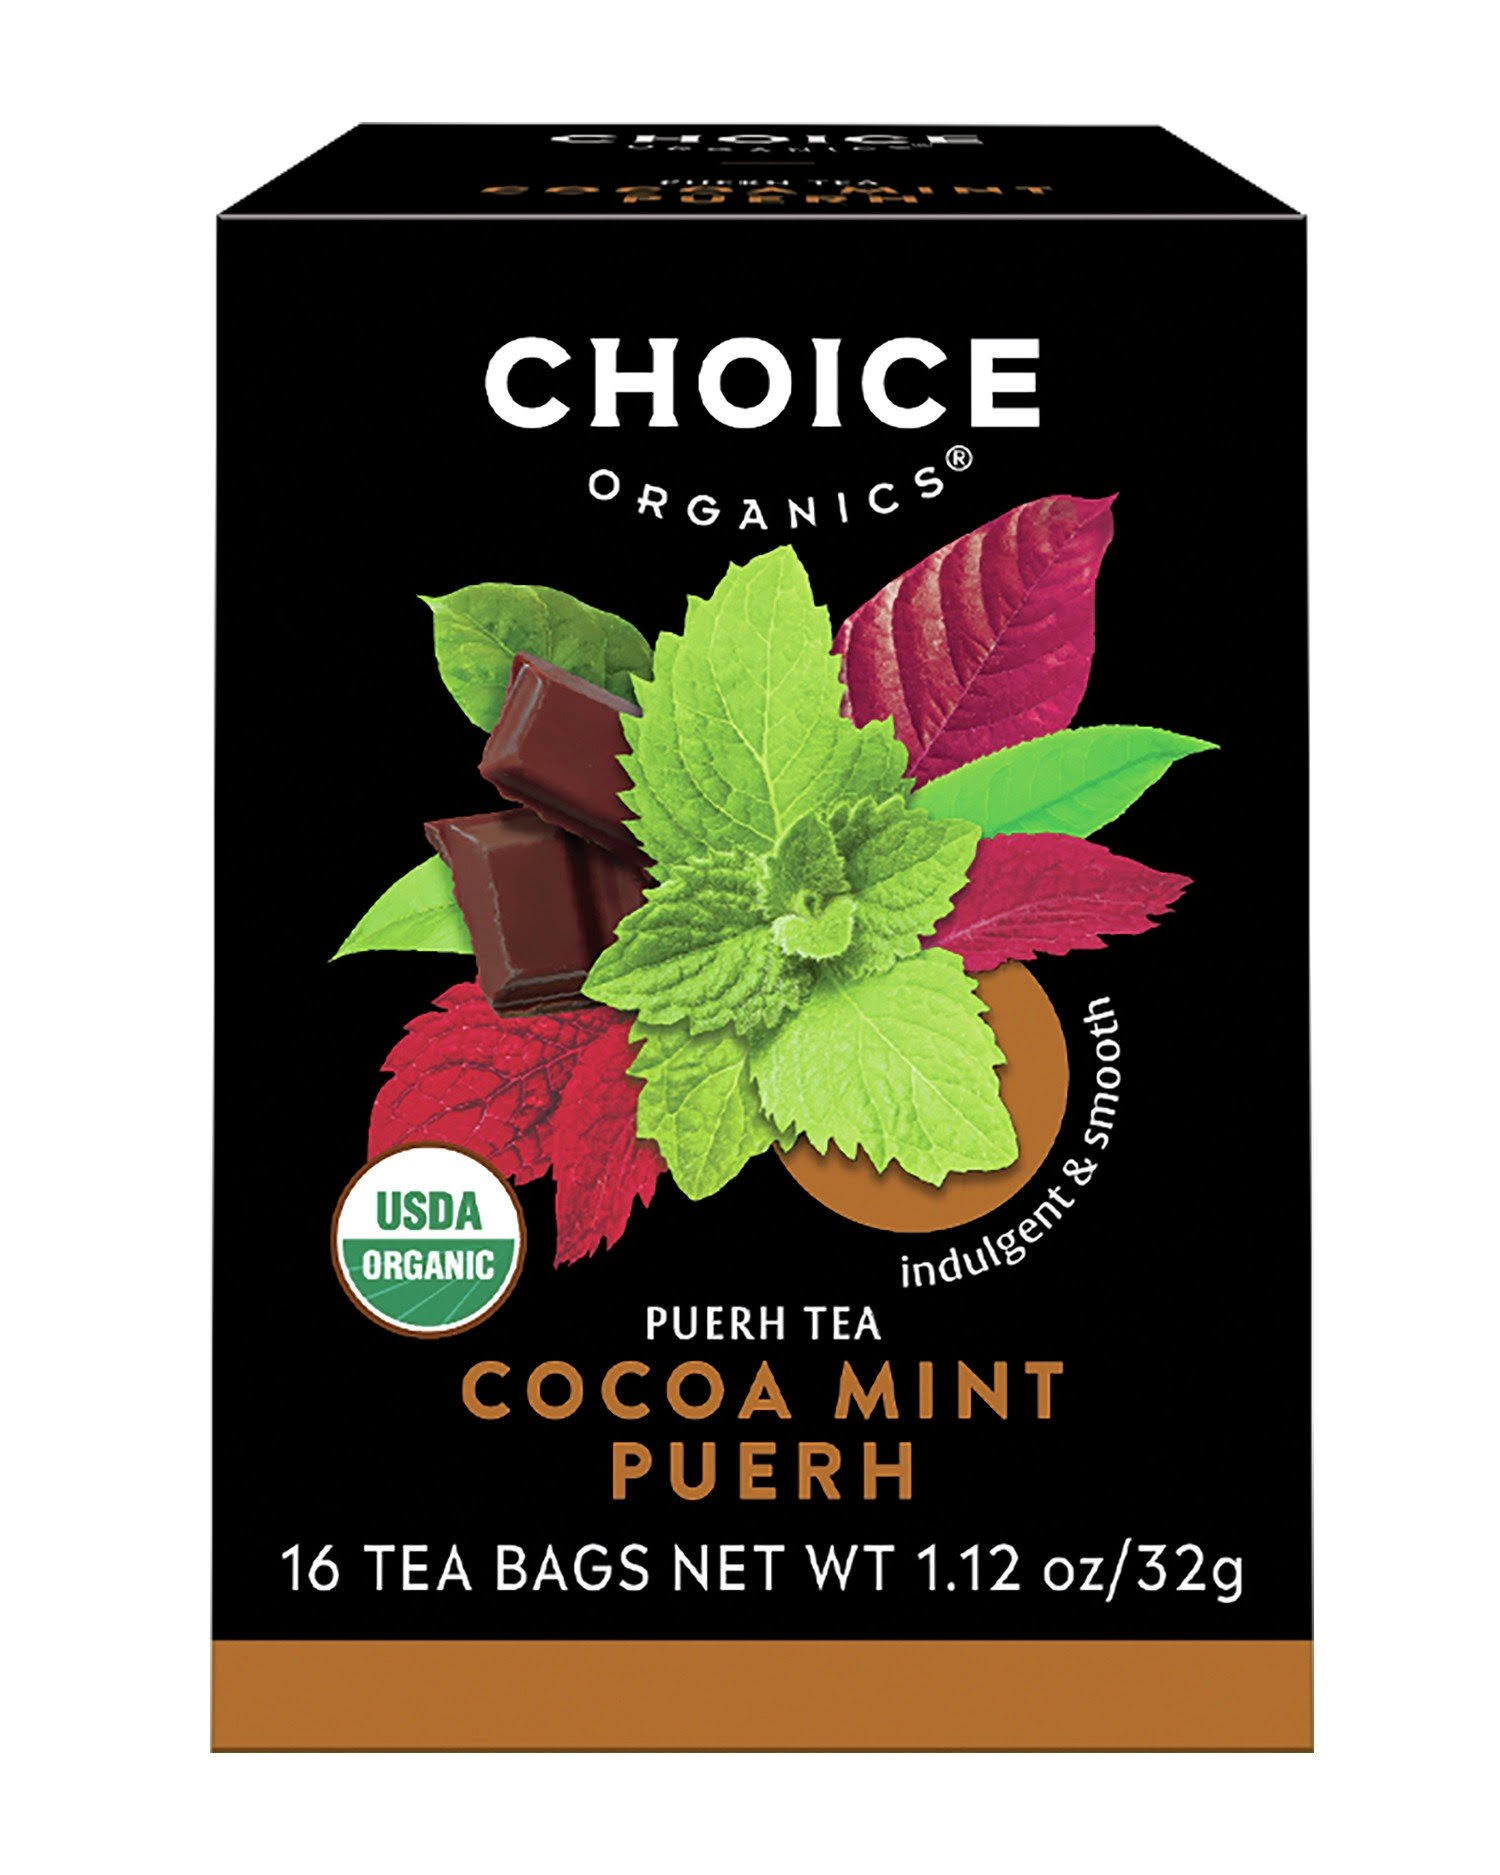 Choice Organic Teas Puerh Tea Cocoa Mint Puerh 16 Tea Bags 1.12 oz (32 g)